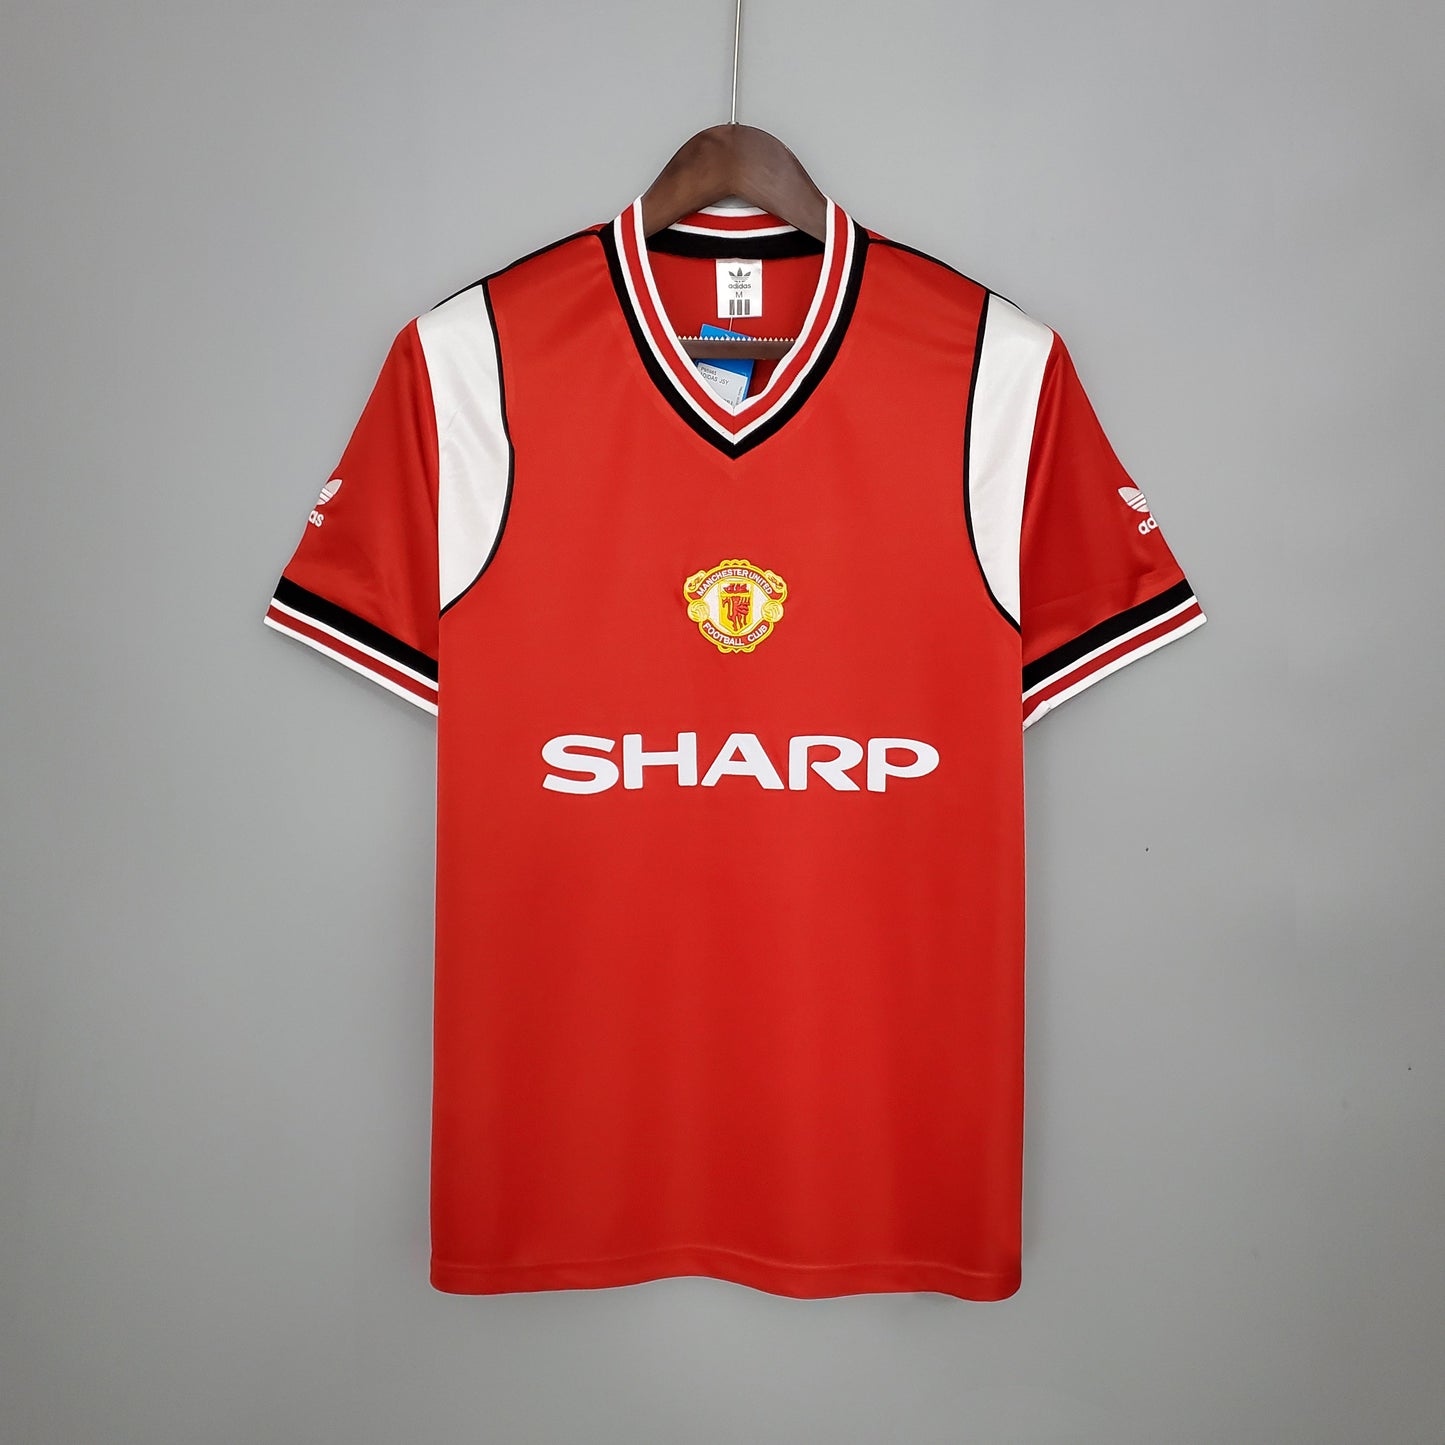 Retro Manchester United Home Kit 85/86